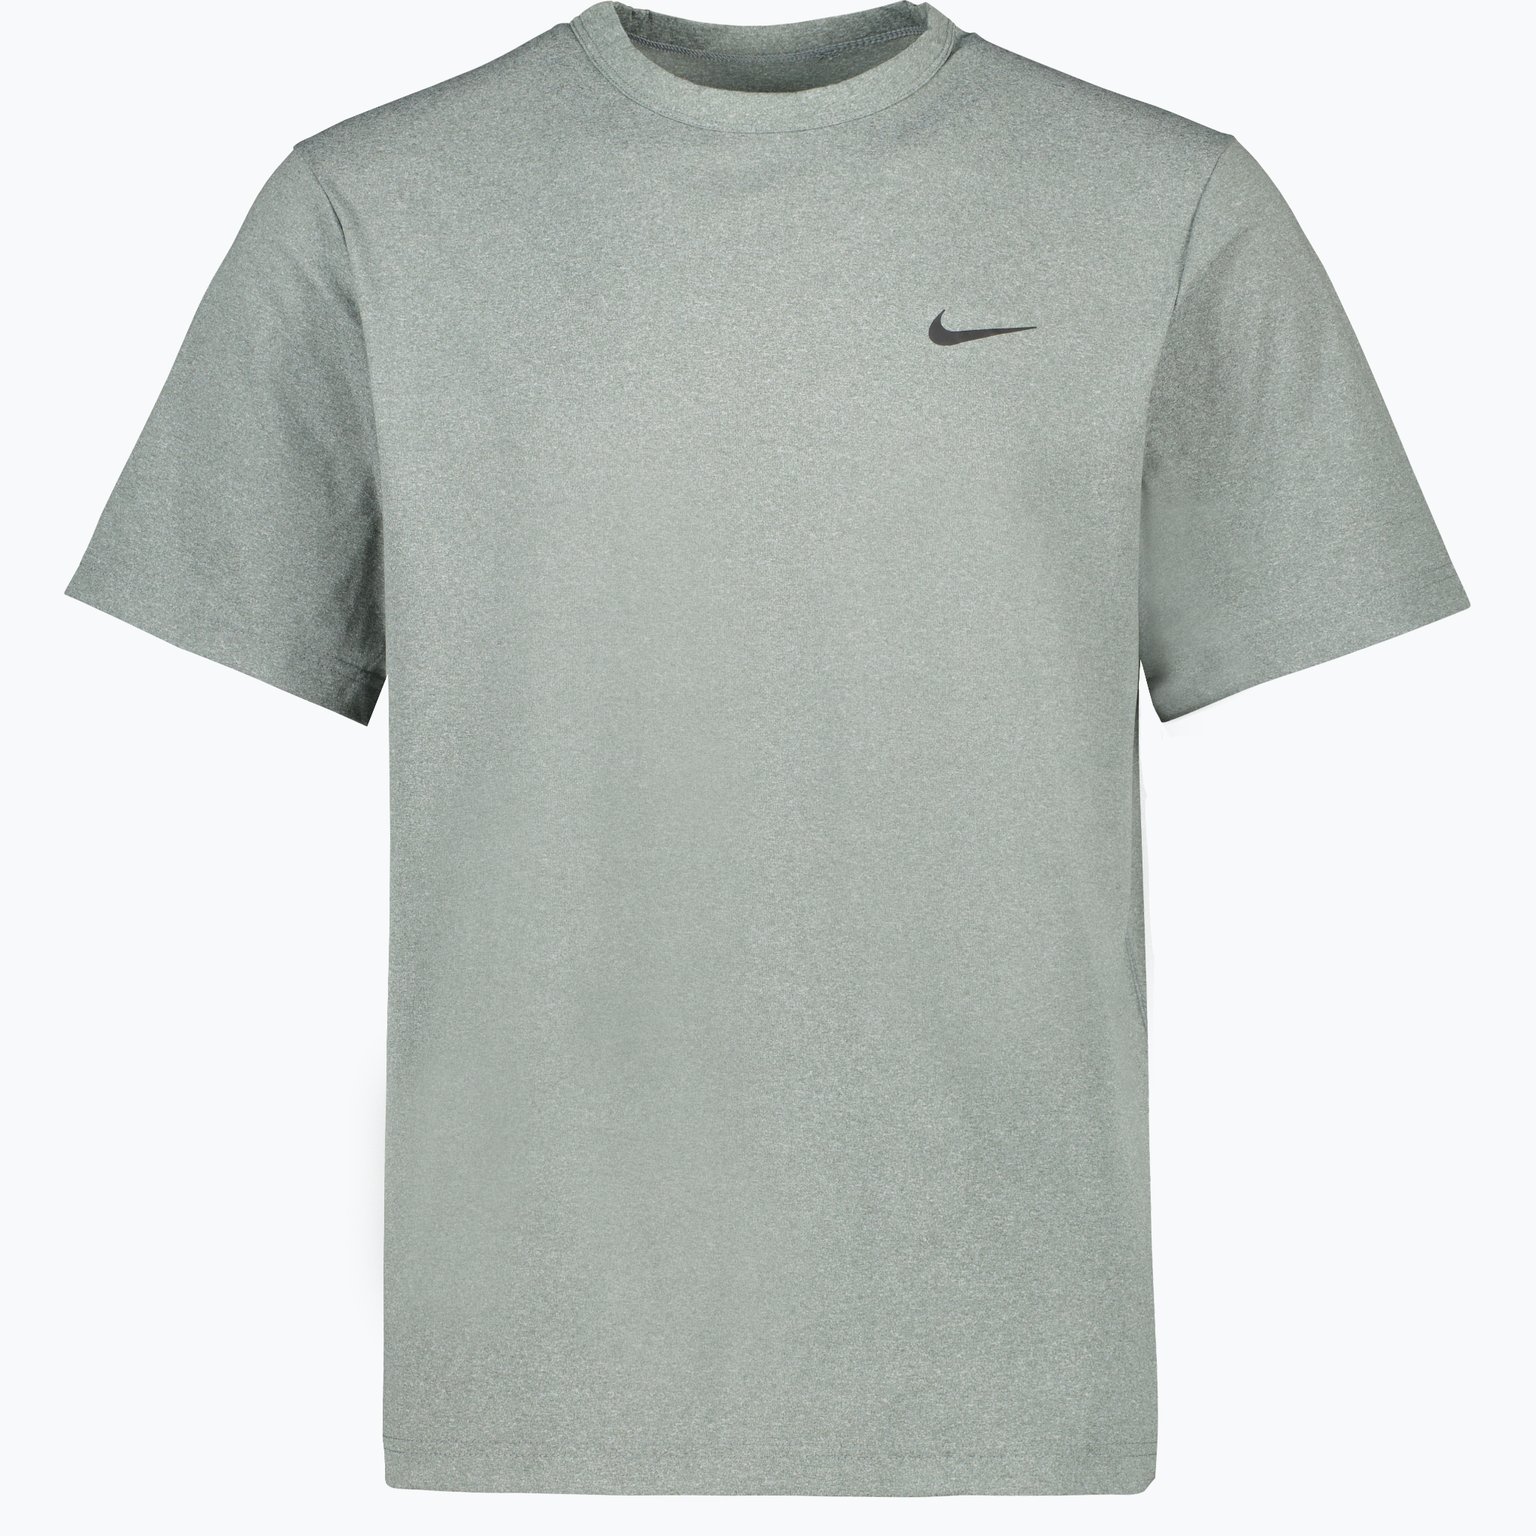 Hyverse Dri-FIT UV träningst-shirt